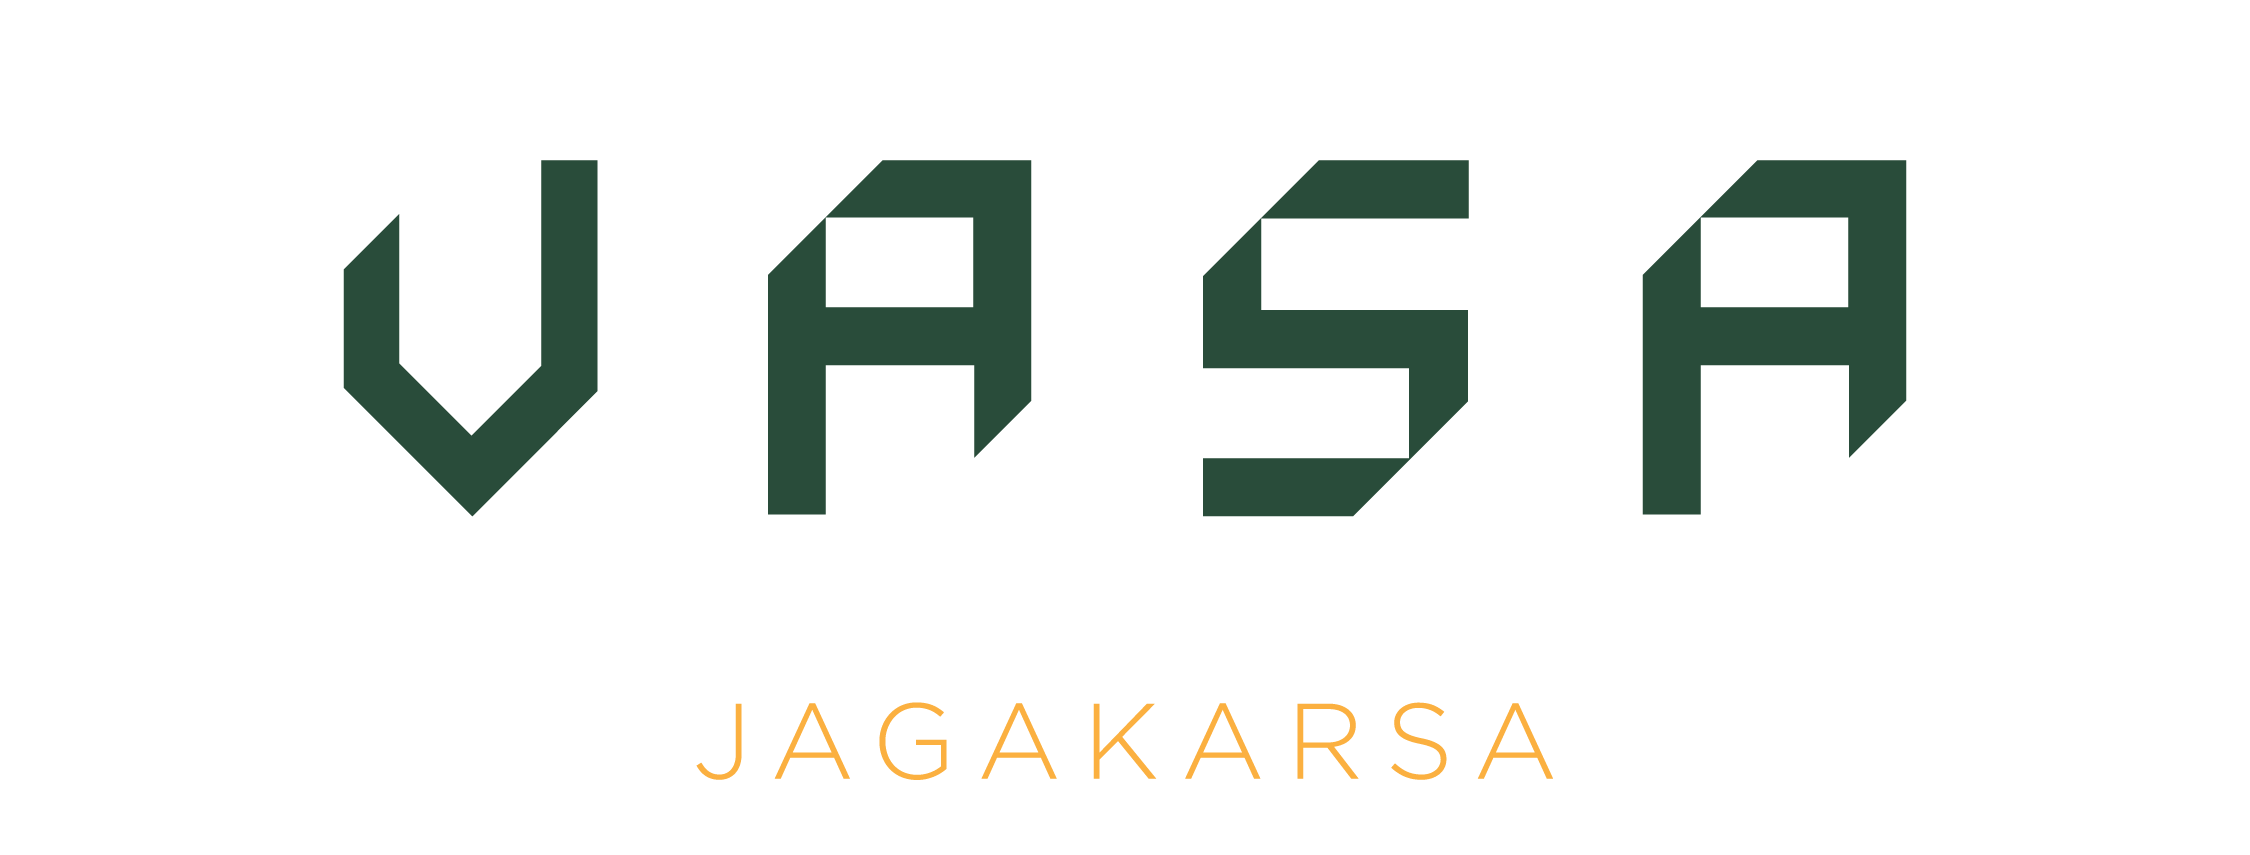 VASA JAGAKARSA - LOGO-01